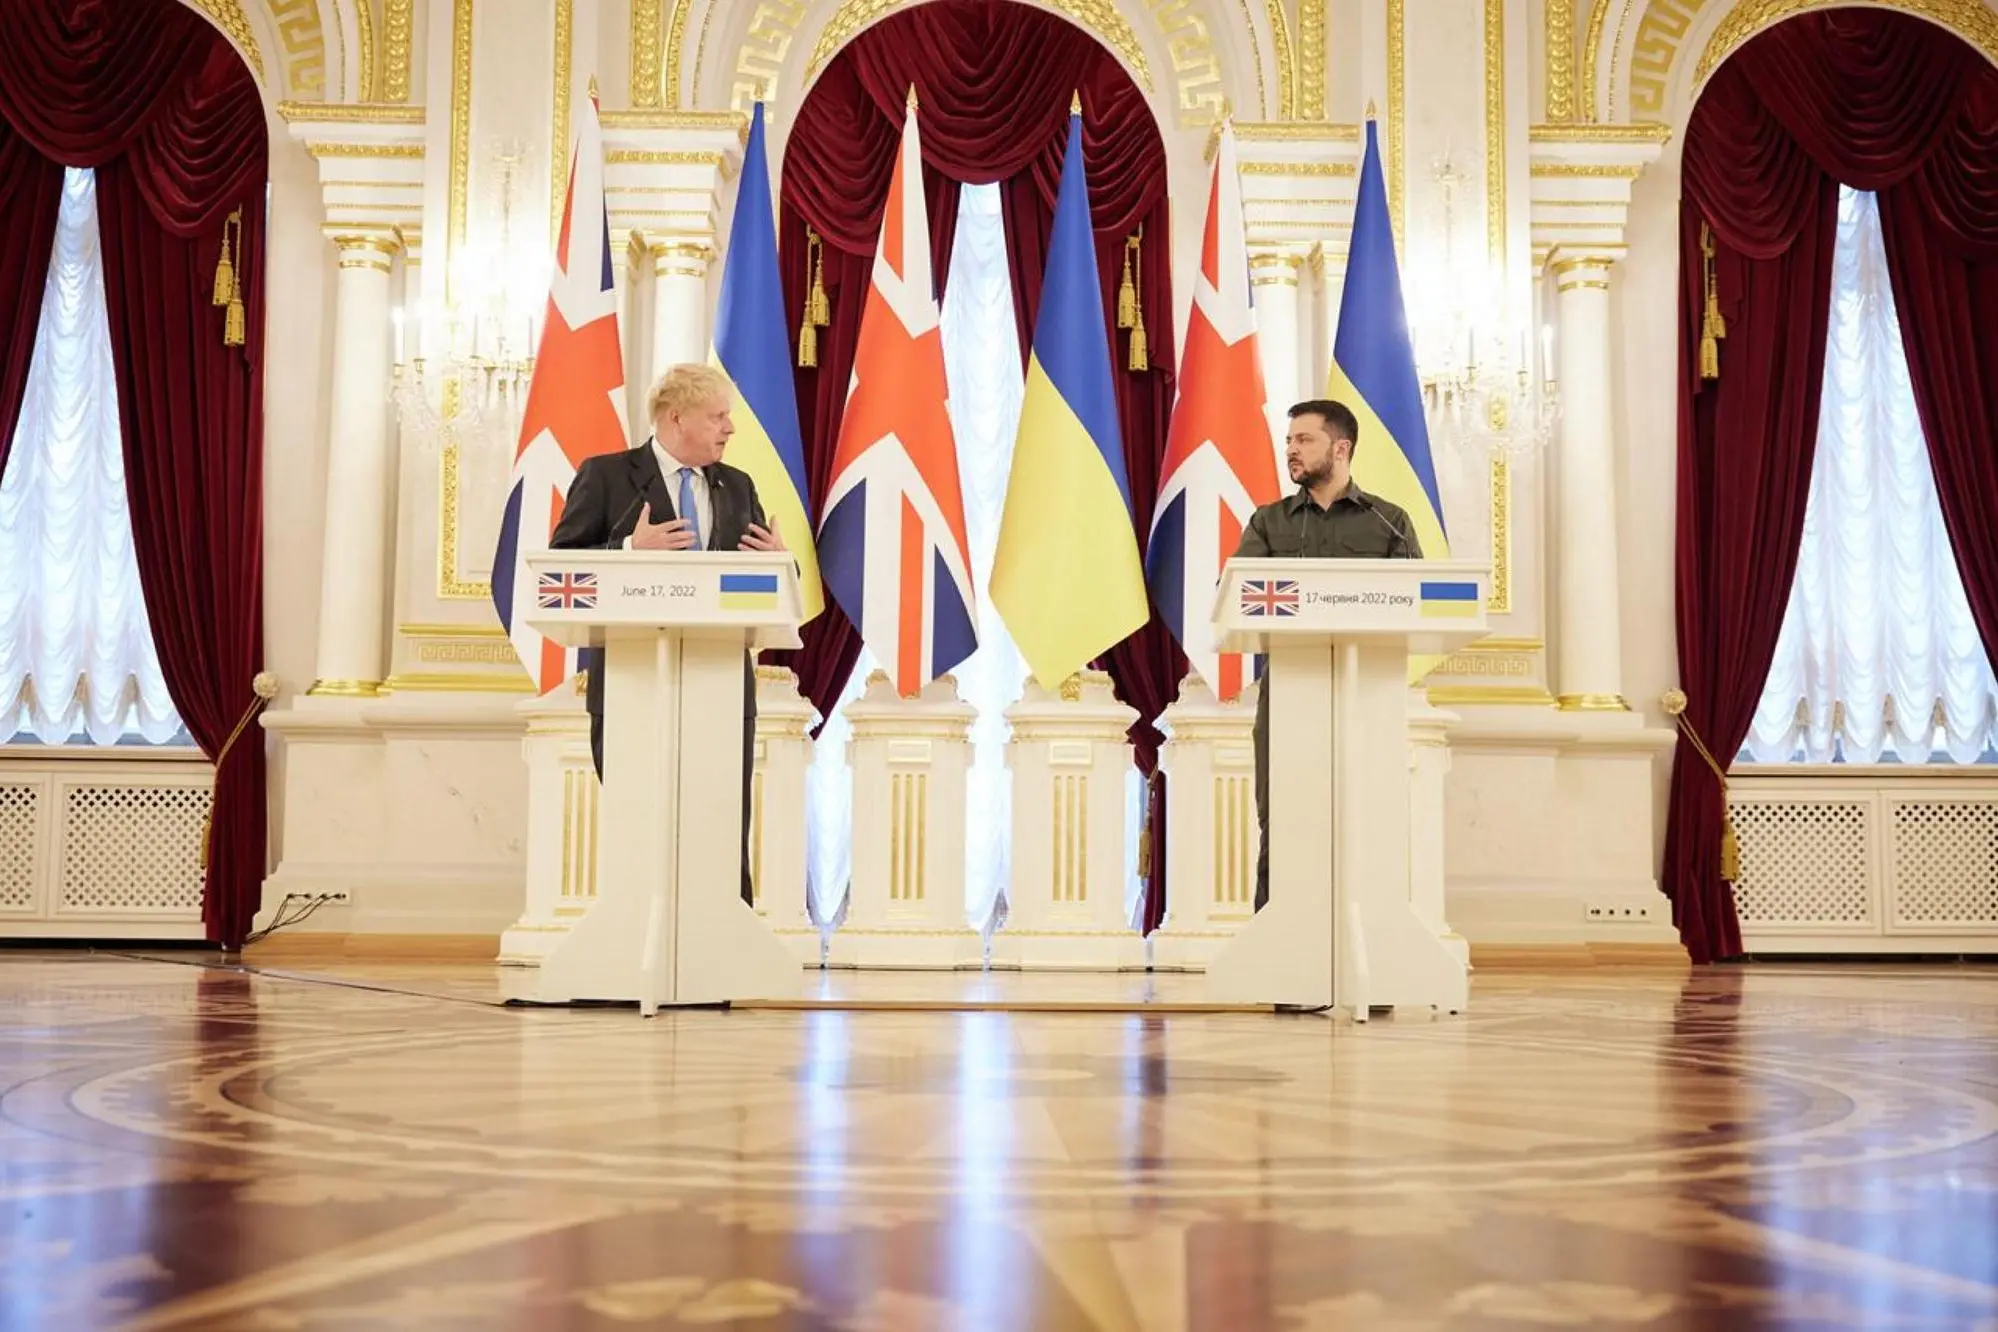 Seconda visita del premier britannico Boris Johnson a Kiev dall'inizio dell'azione militare russa in Ucraina, 17 giugno 2022. Si tratta di un nuovo viaggio a sorpresa, destinato a essere coronato con un altro faccia a faccia con il presidente ucraina Volodymyr Zelensky, che nelle ultime settimane ha più volte elogiato BoJo come "un amico" e il governo britannico come un esempio in seno al fronte occidentale nel sostegno - anche militare - al suo Paese. TELEGRAM ZELENSKY +++ ATTENZIONE LA FOTO NON PUO' ESSERE PUBBLICATA O RIPRODOTTA SENZA L'AUTORIZZAZIONE DELLA FONTE DI ORIGINE CUI SI RINVIA+++